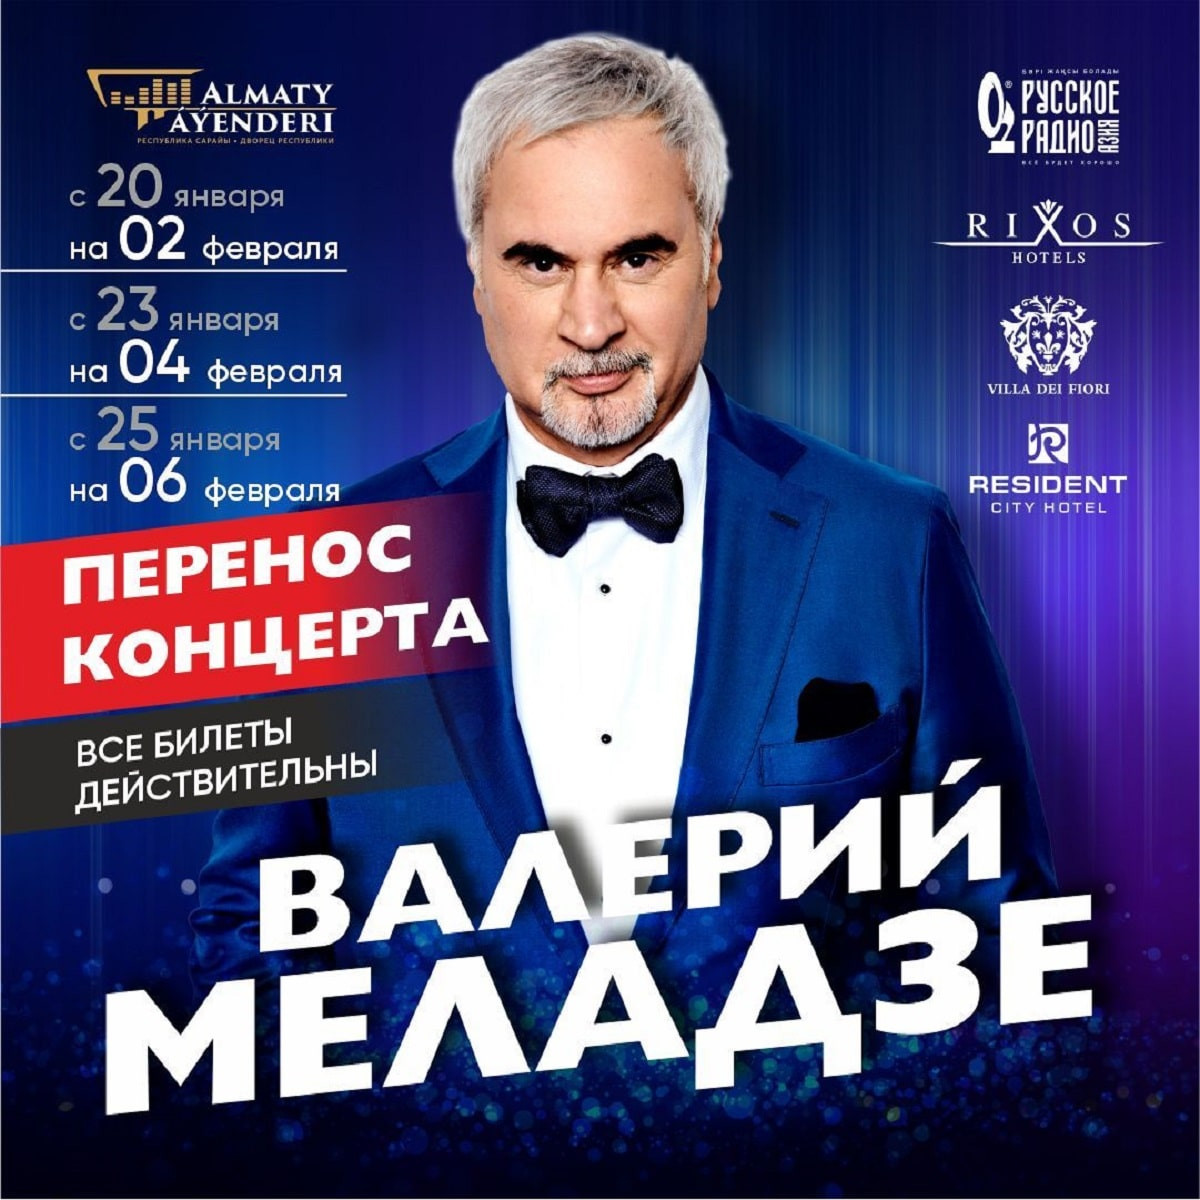 Валерий Меладзе отменил концерт в Алматы